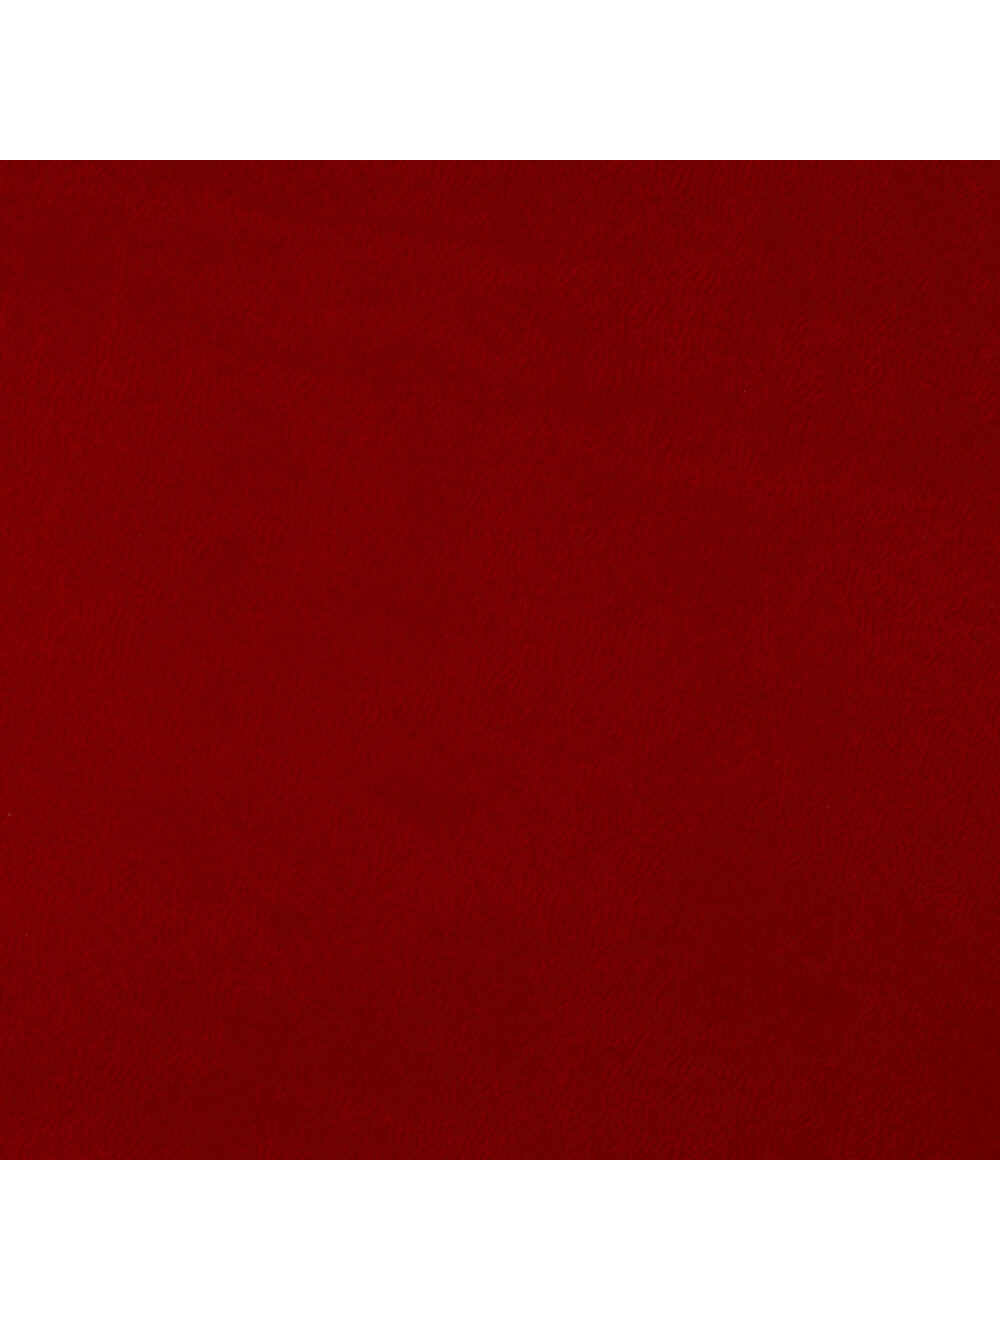 روما بيري مادة حمراء سواتش (7968)